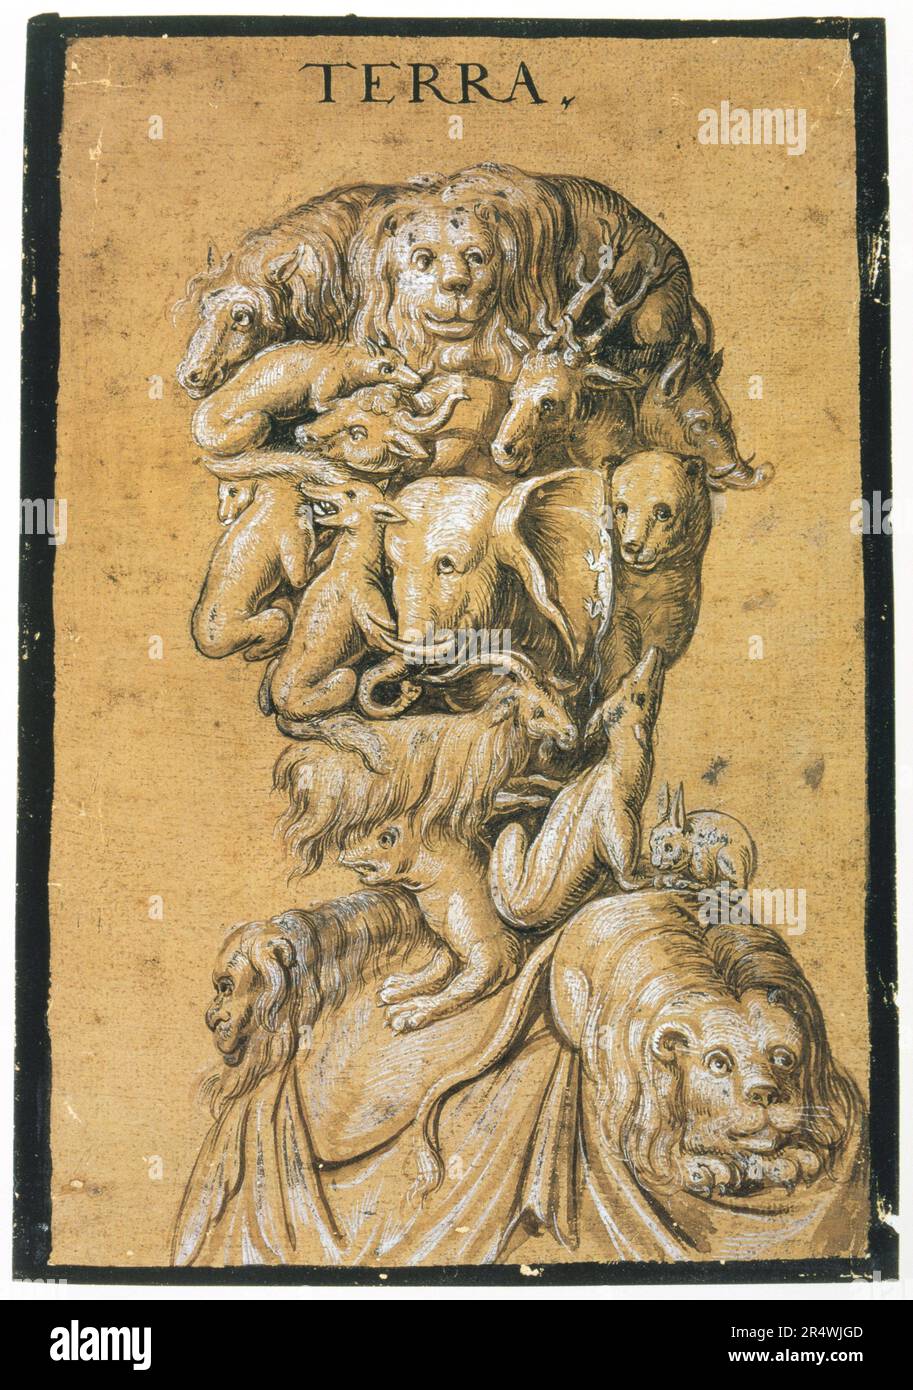 Anonyme 'Terre' (tête et épaules grotesques composées de toutes sortes d'animaux) c1600 Tempera en marron et blanc sur papier teinté Collection privée Banque D'Images